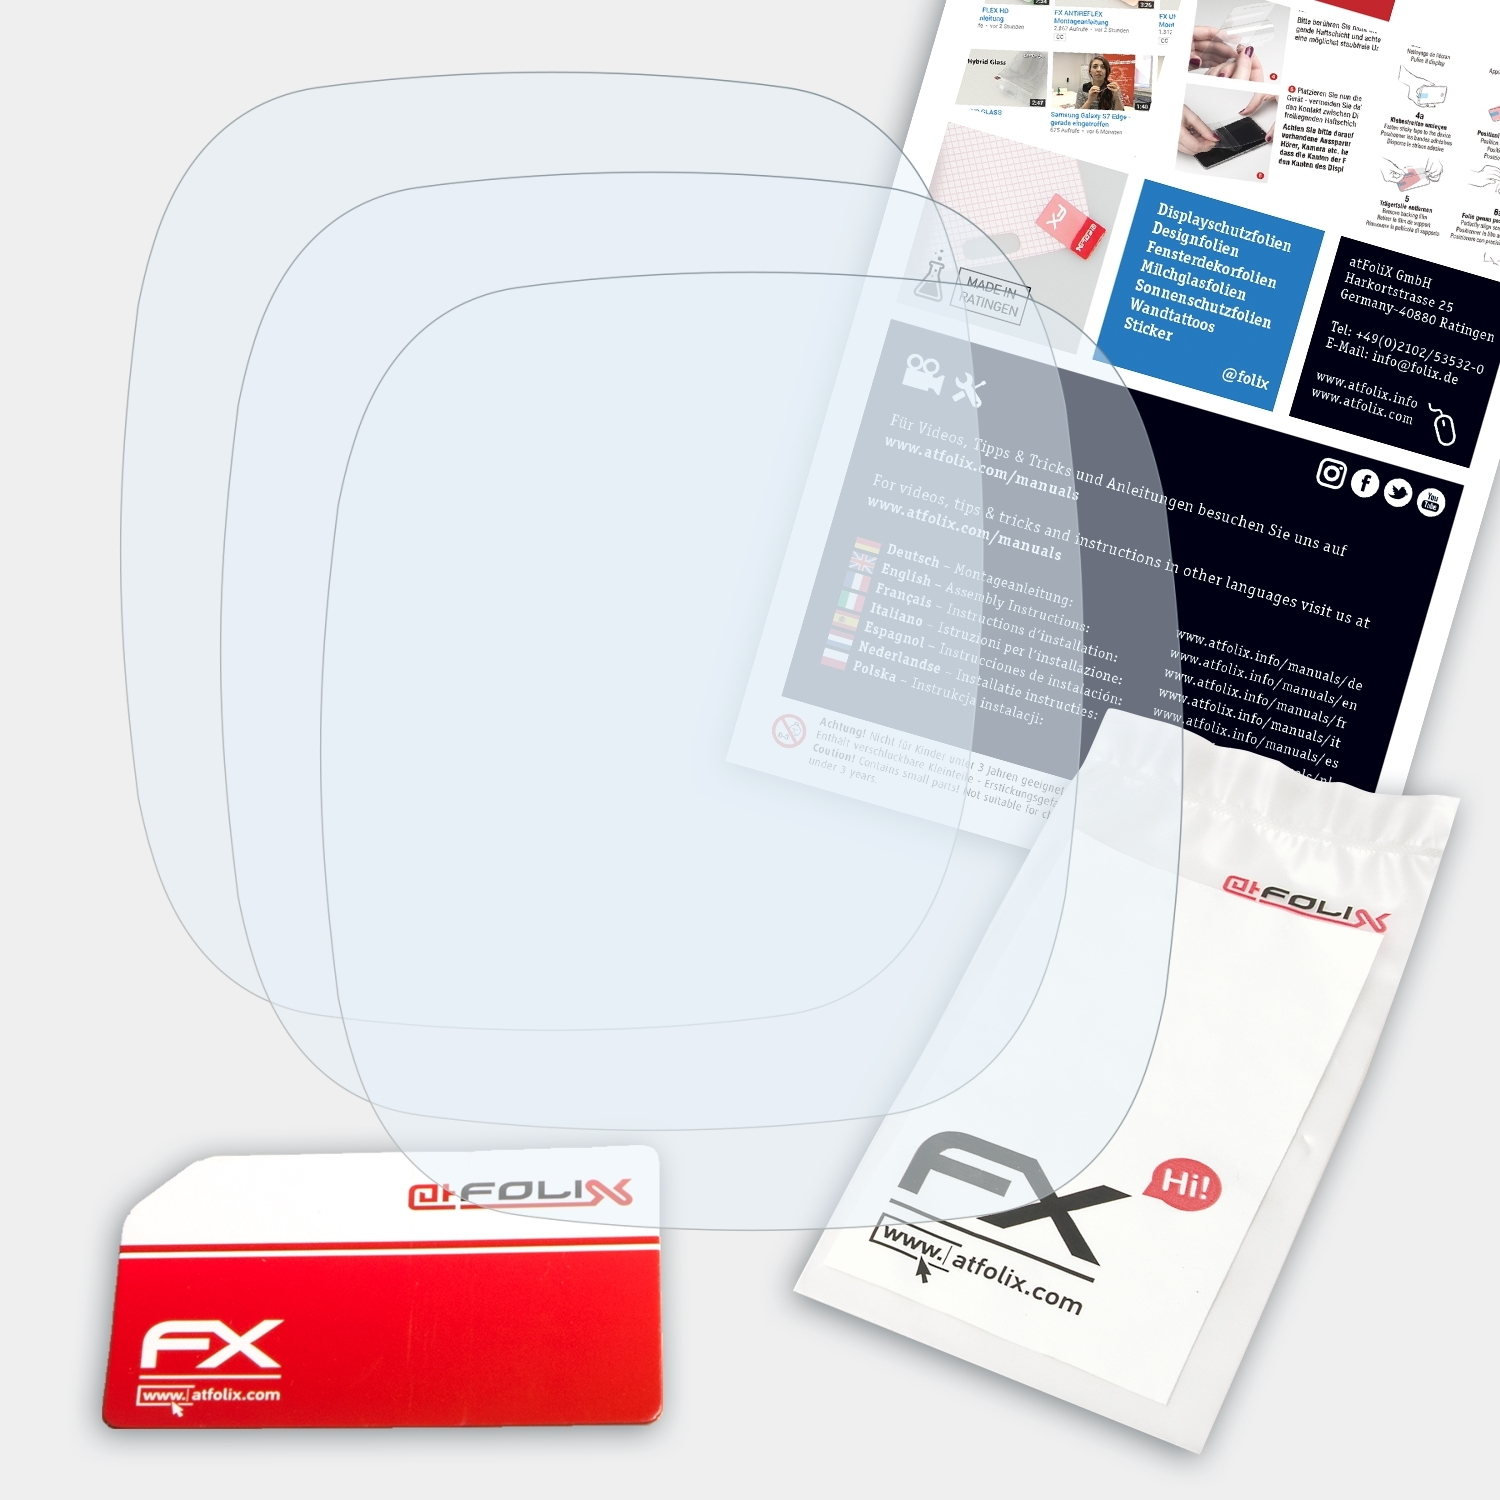 ATFOLIX 3x FX-Clear Displayschutz(für Sigma 26.14) PC